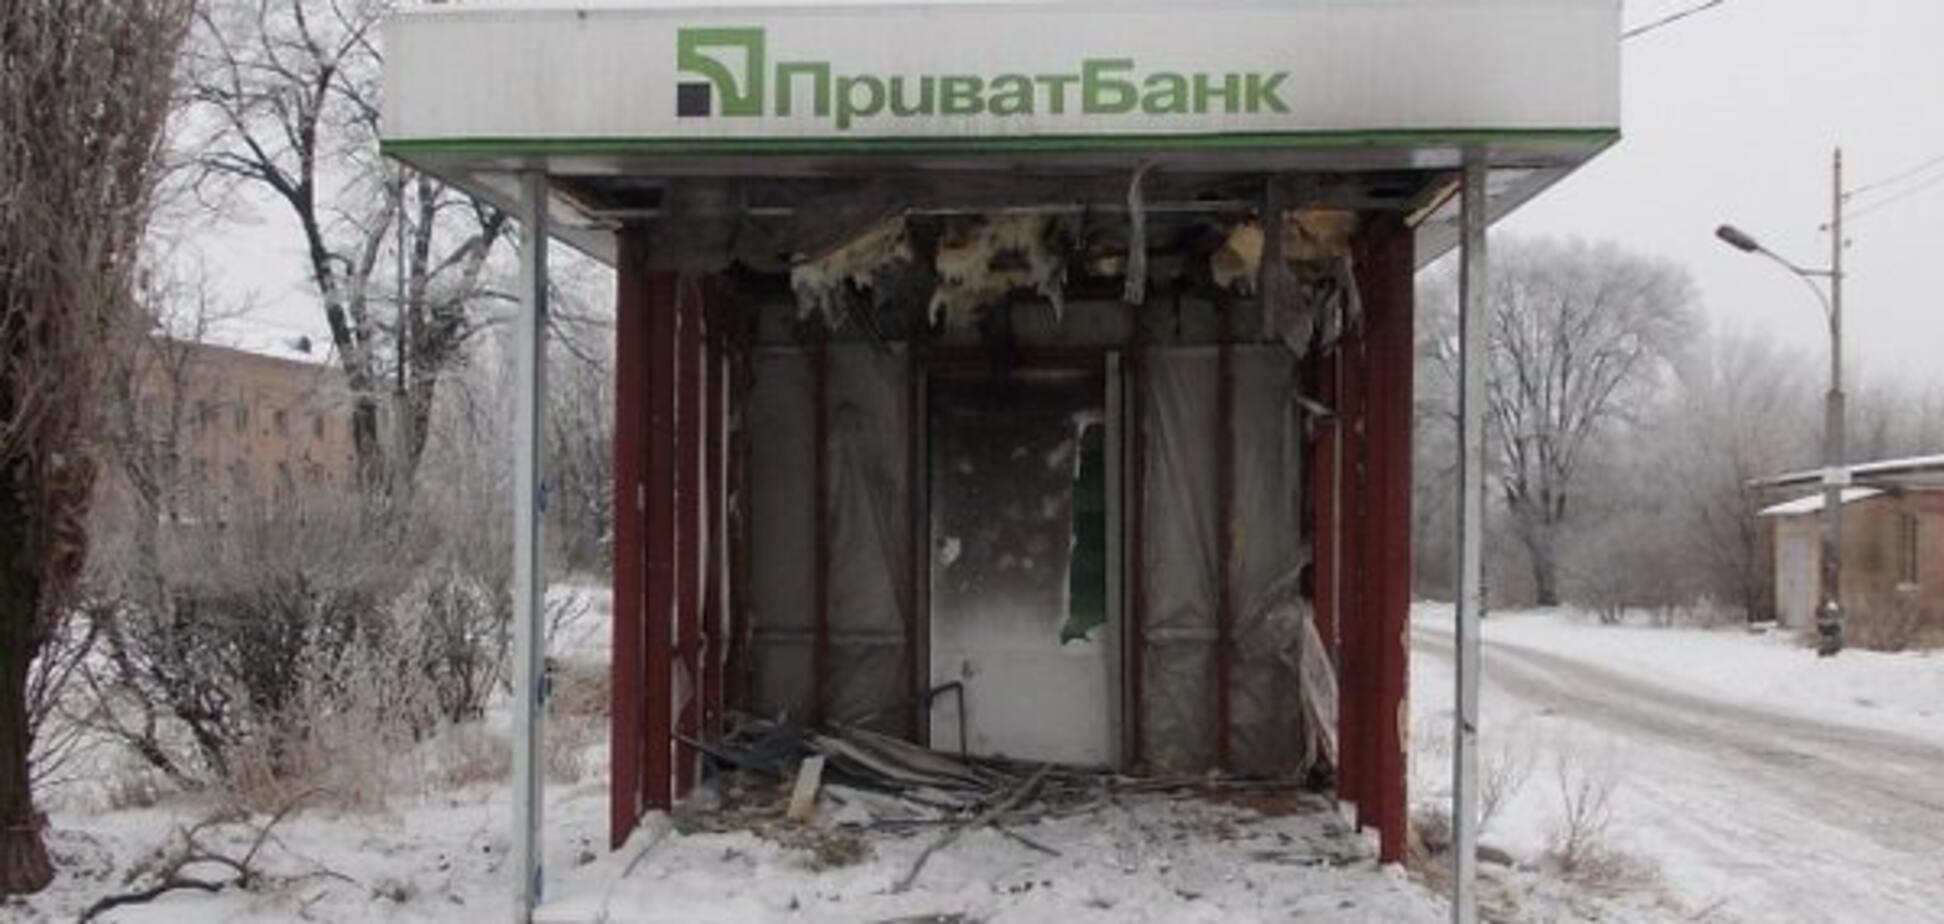 А гроші звідки брати будуть? Терористи знівечили банкомат в Макіївці. Фотофакт